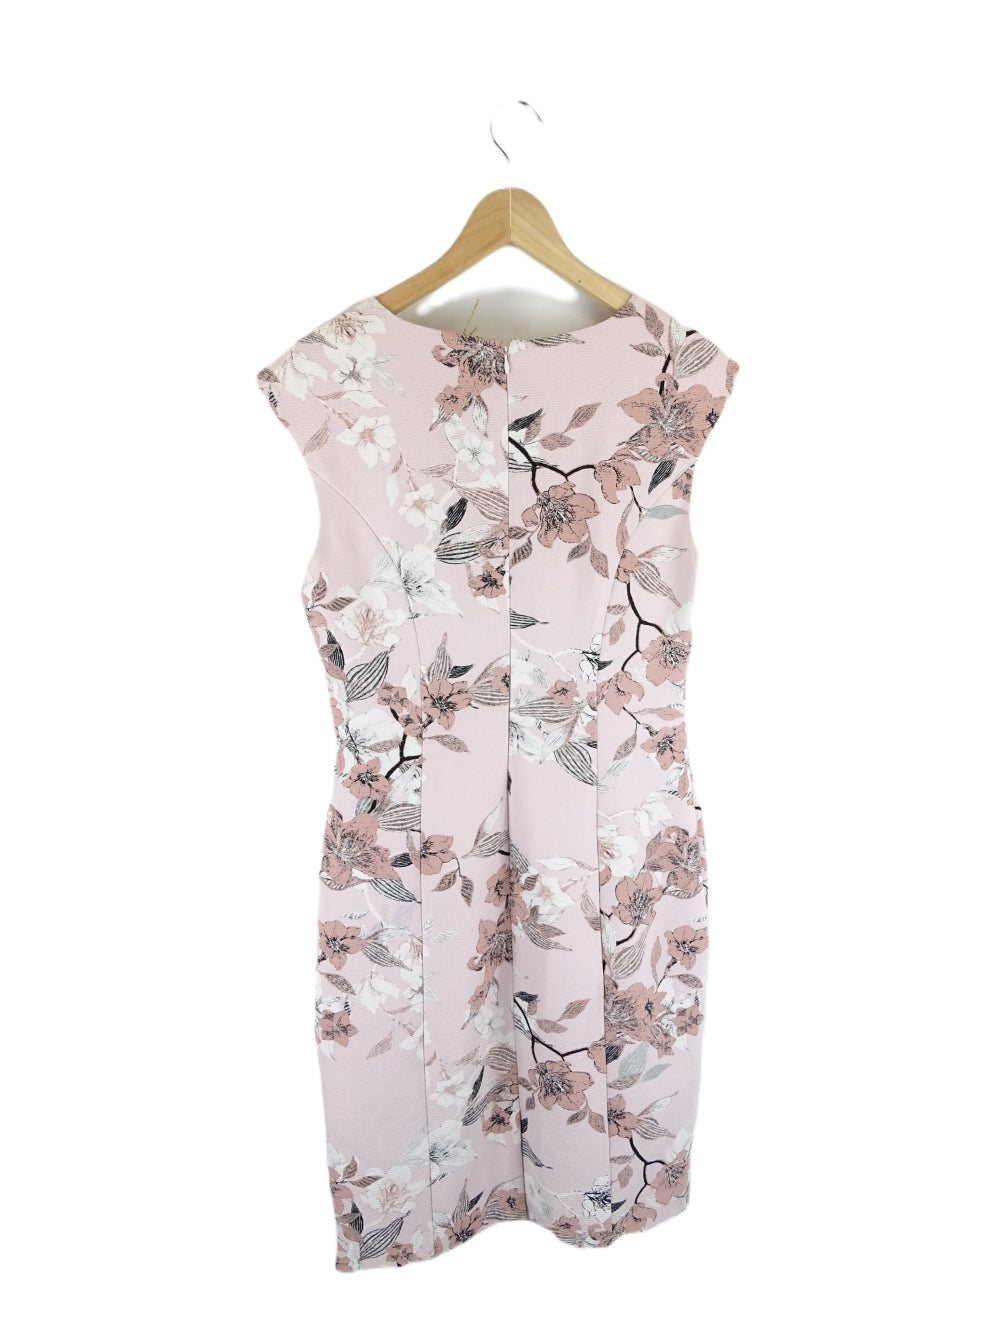 Jacquie E Pink Floral Dress 10